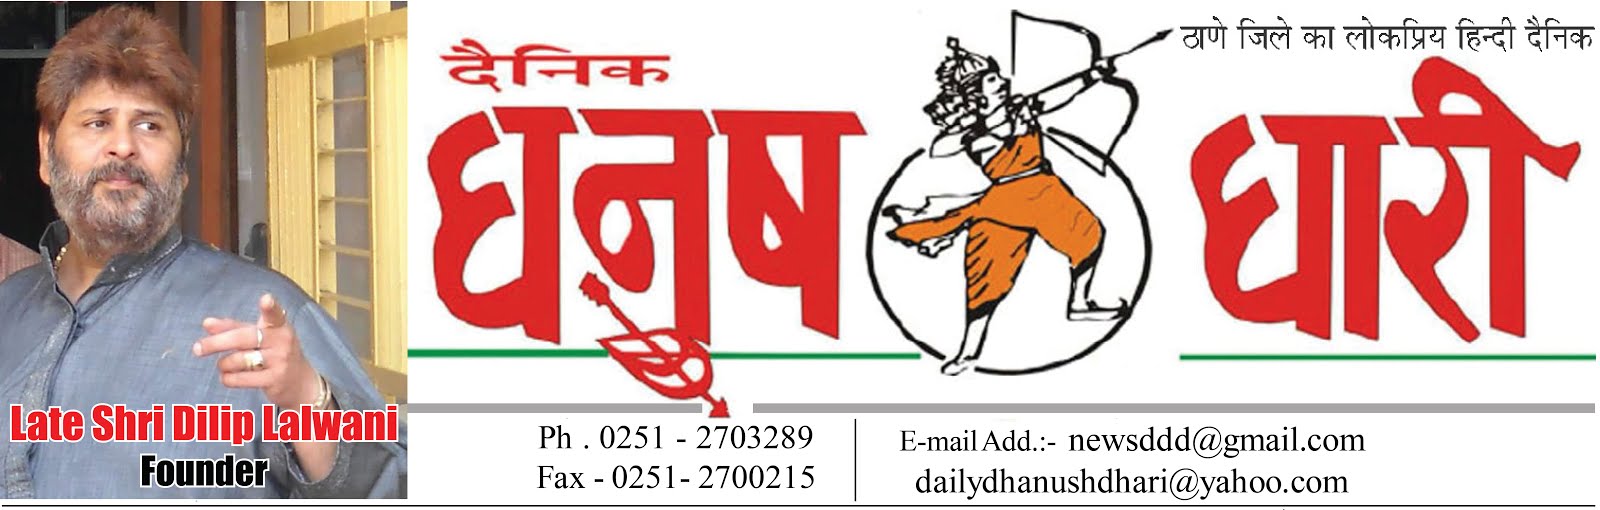 Daily Dhanushdhari